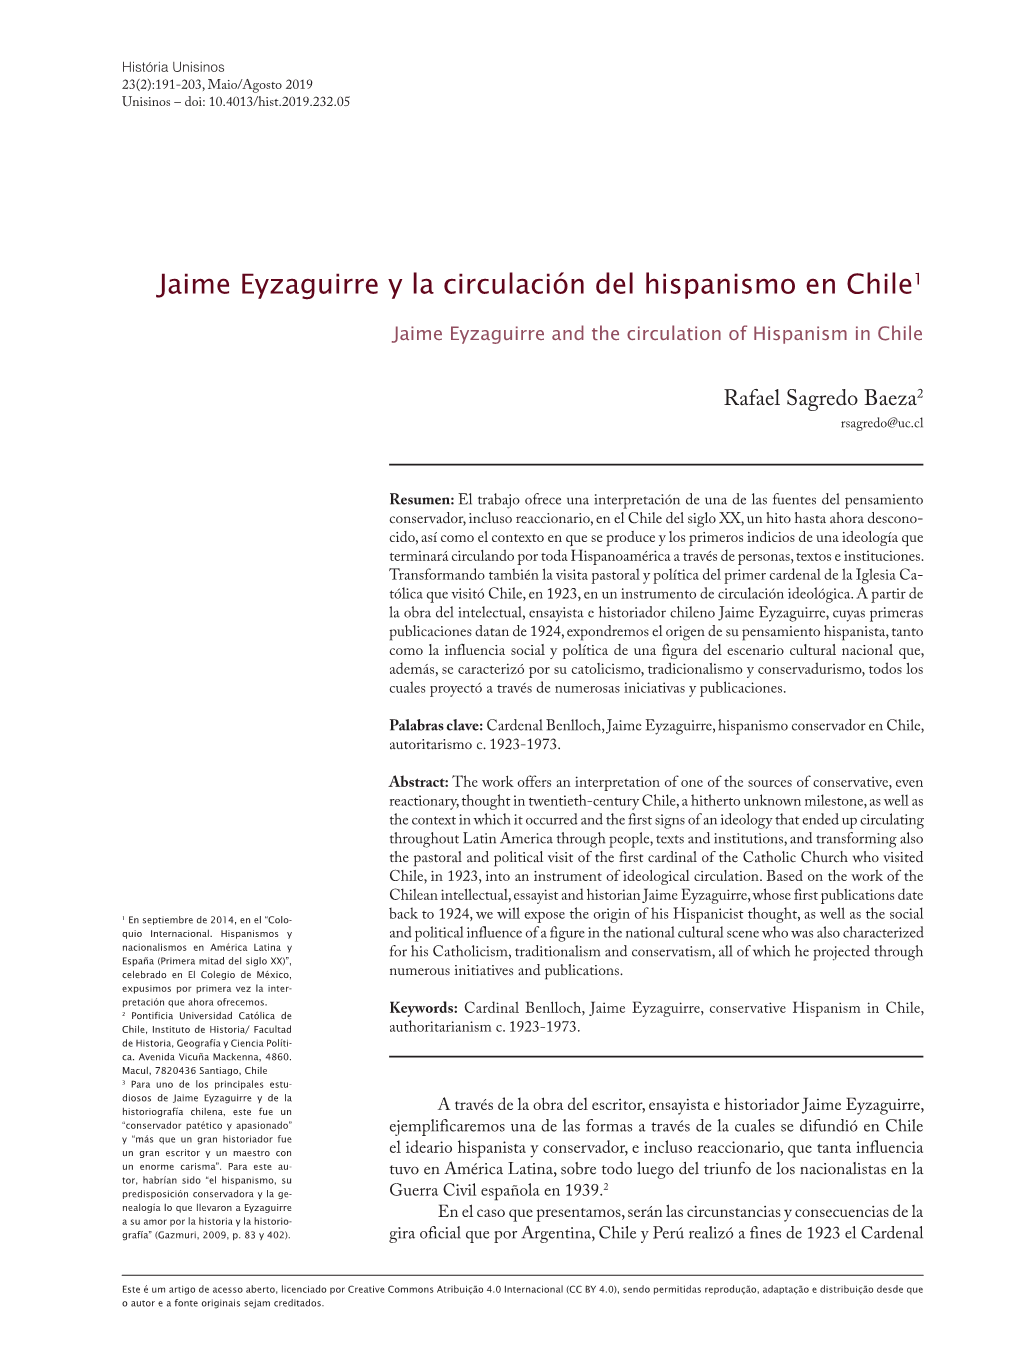 Jaime Eyzaguirre Y La Circulación Del Hispanismo En Chile1